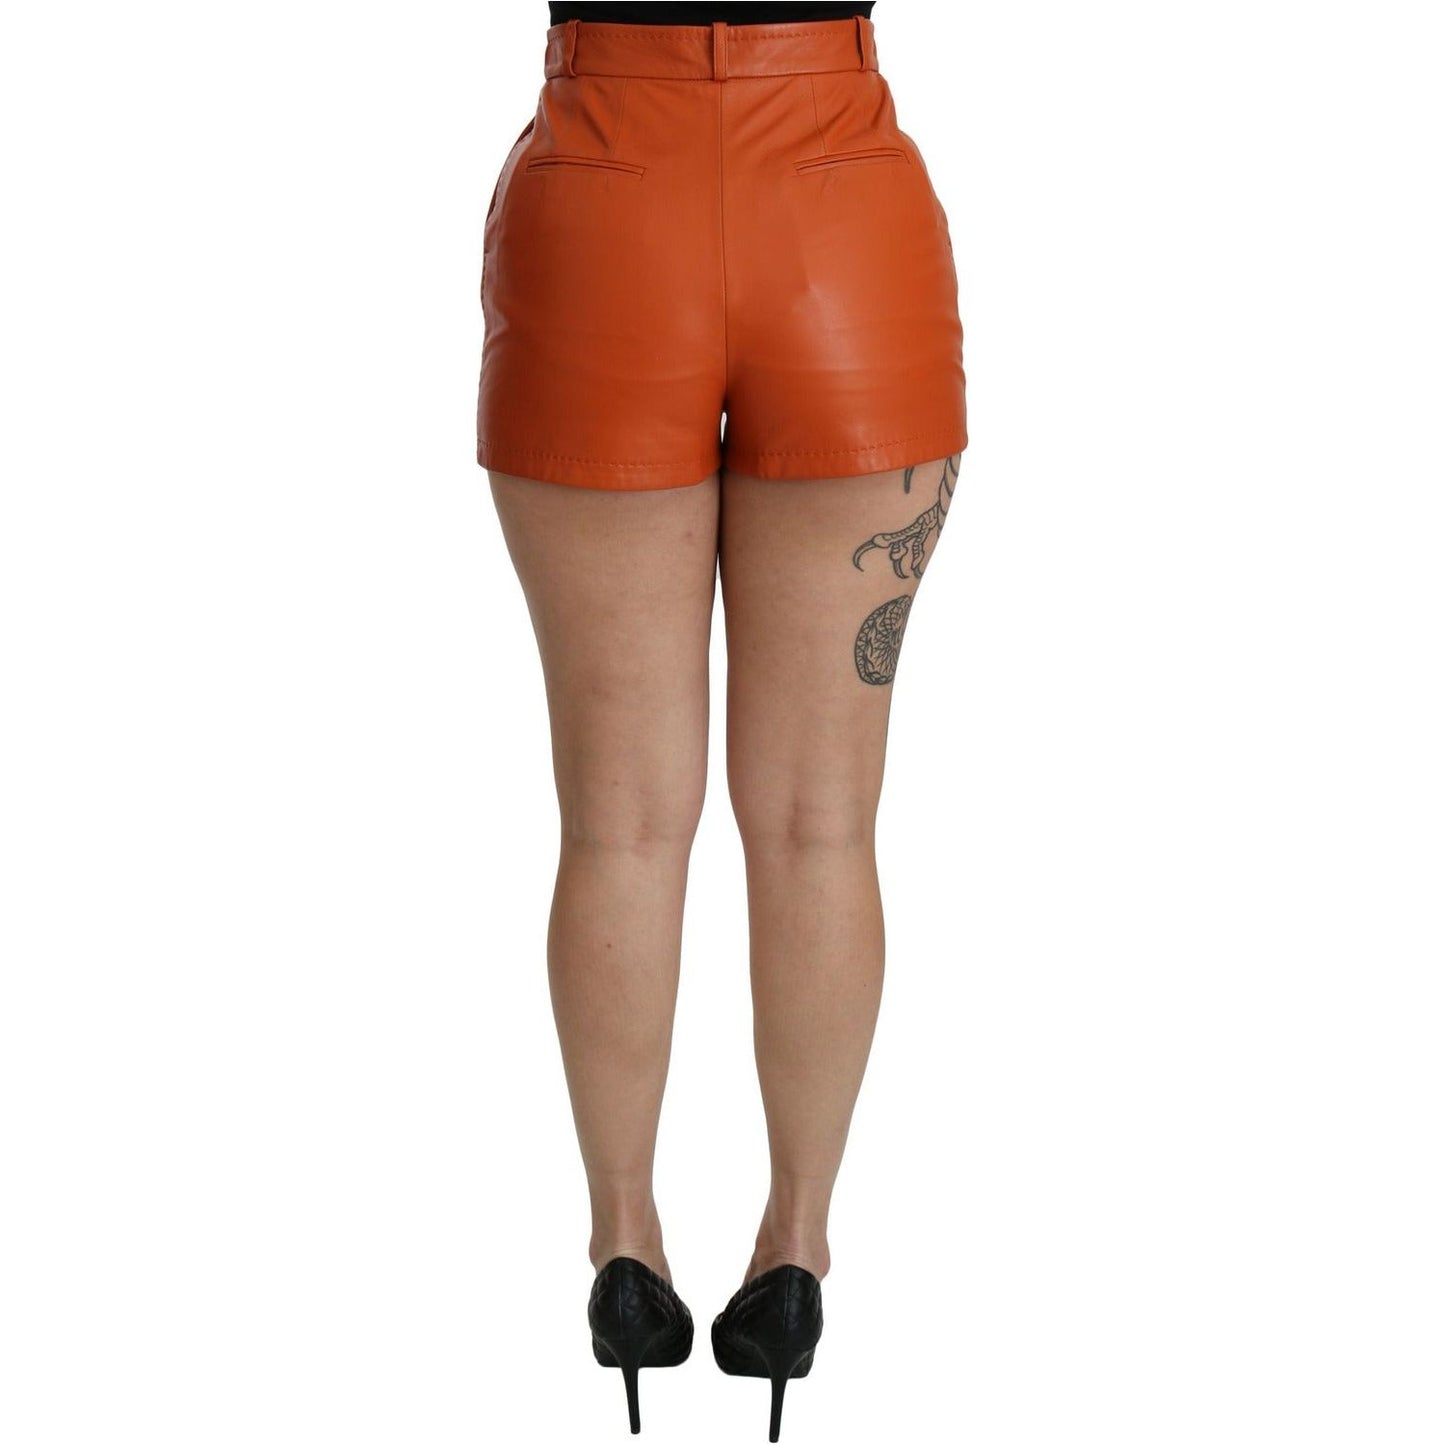 Dolce & Gabbana Chic Orange Leather High Waist Hot Pants Shorts orange-leather-high-waist-hot-pants-shorts